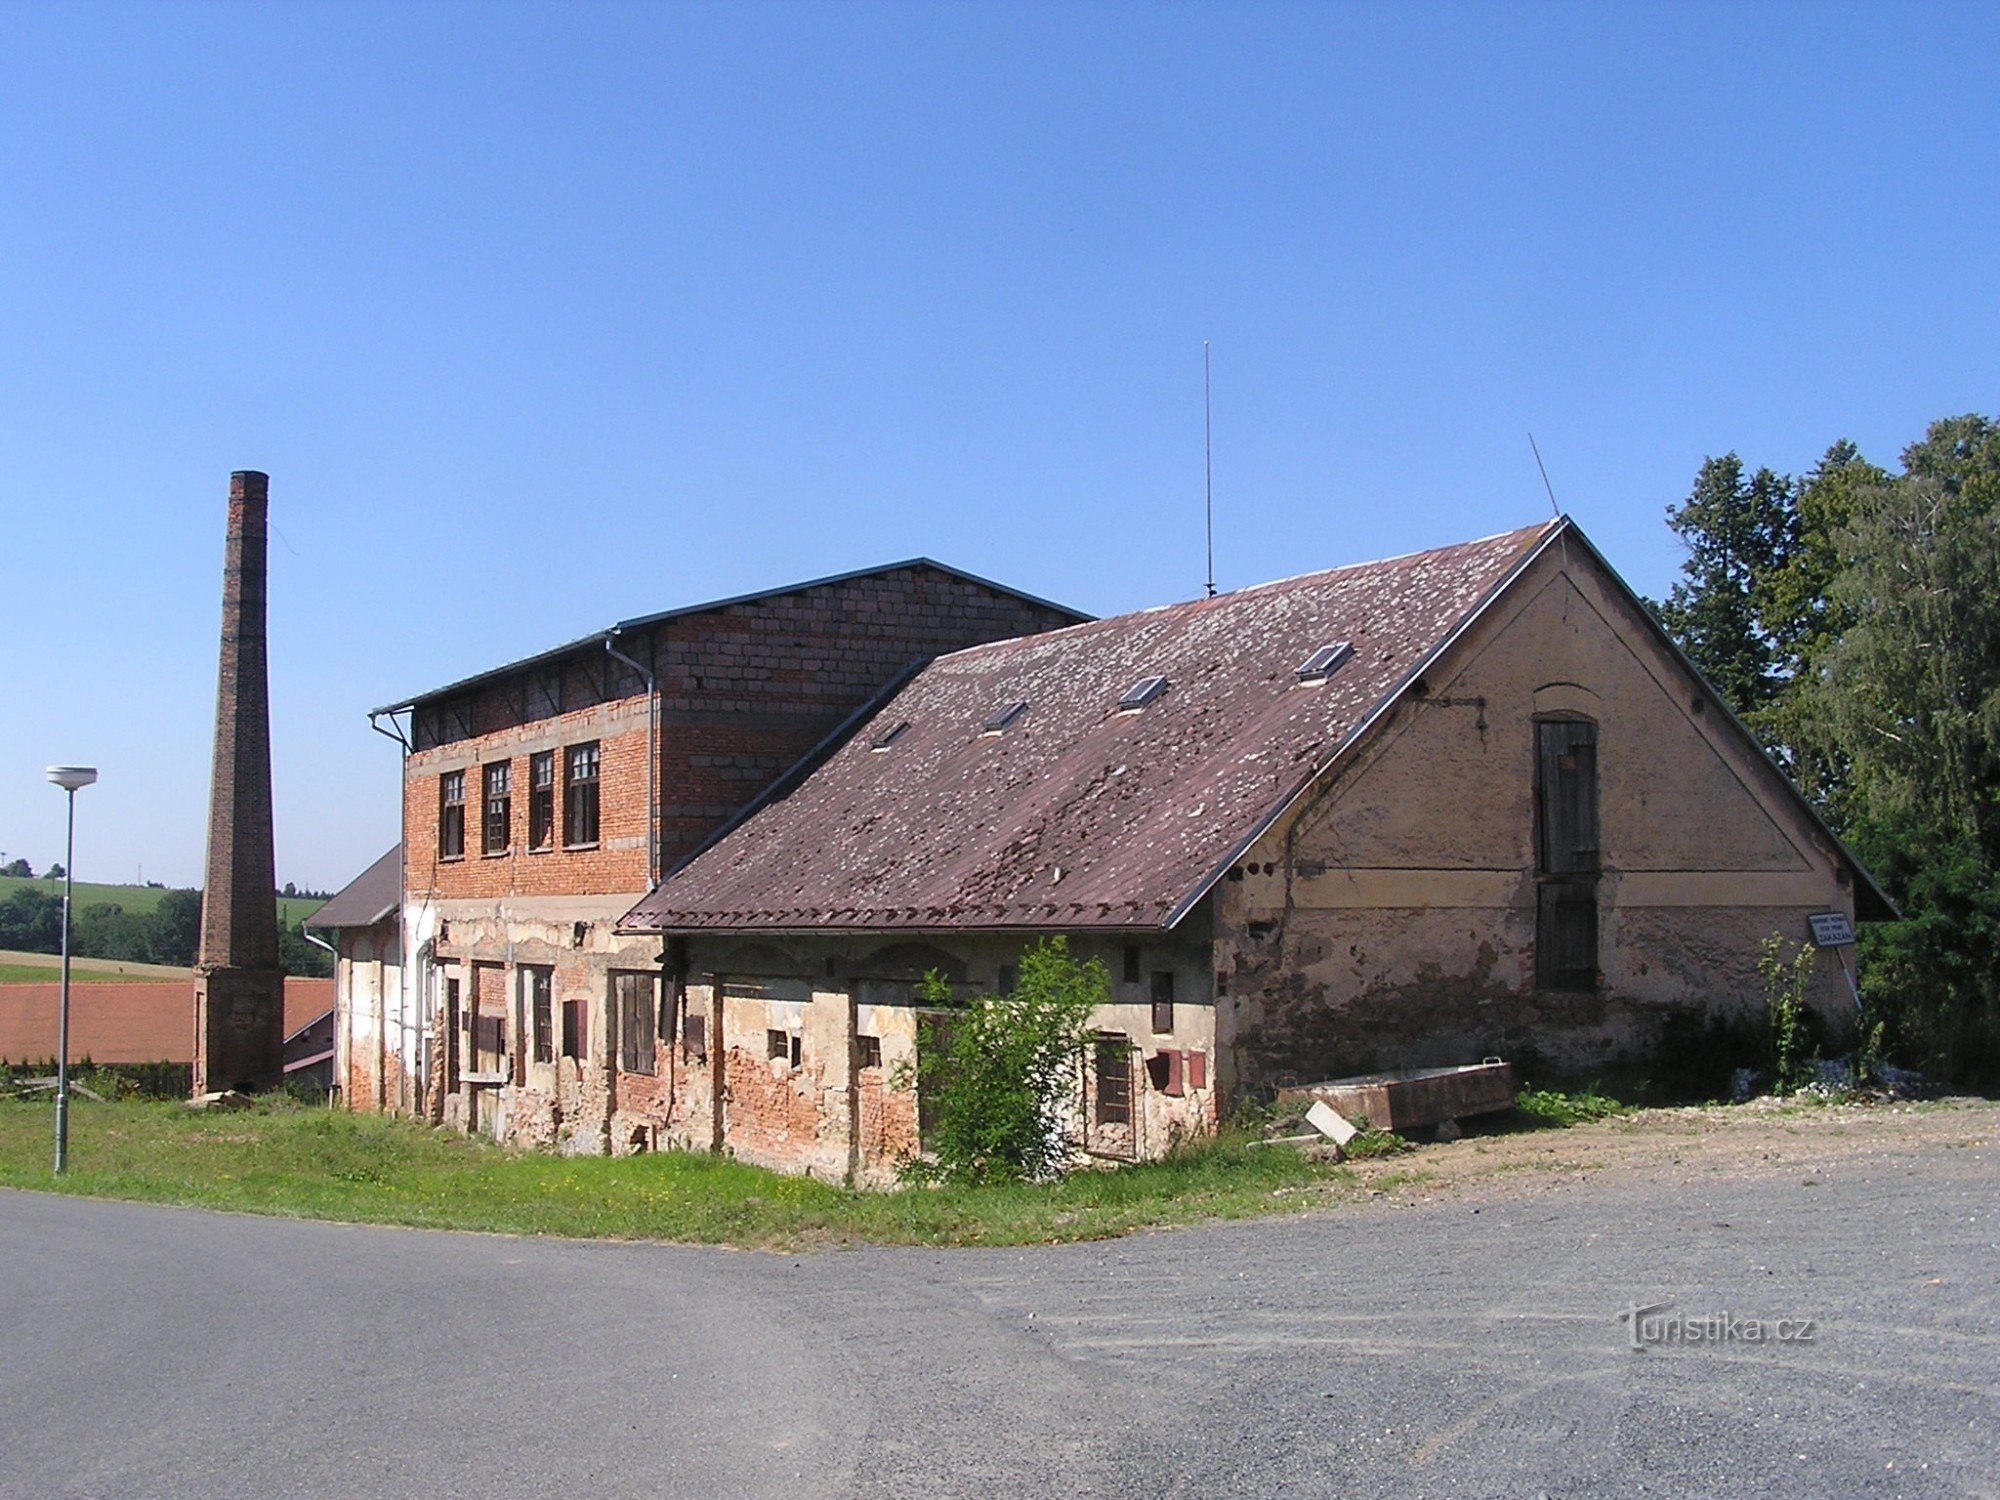 Fæstning i Zbraslavice - landbrugsbygninger - 7.8.2008. august XNUMX